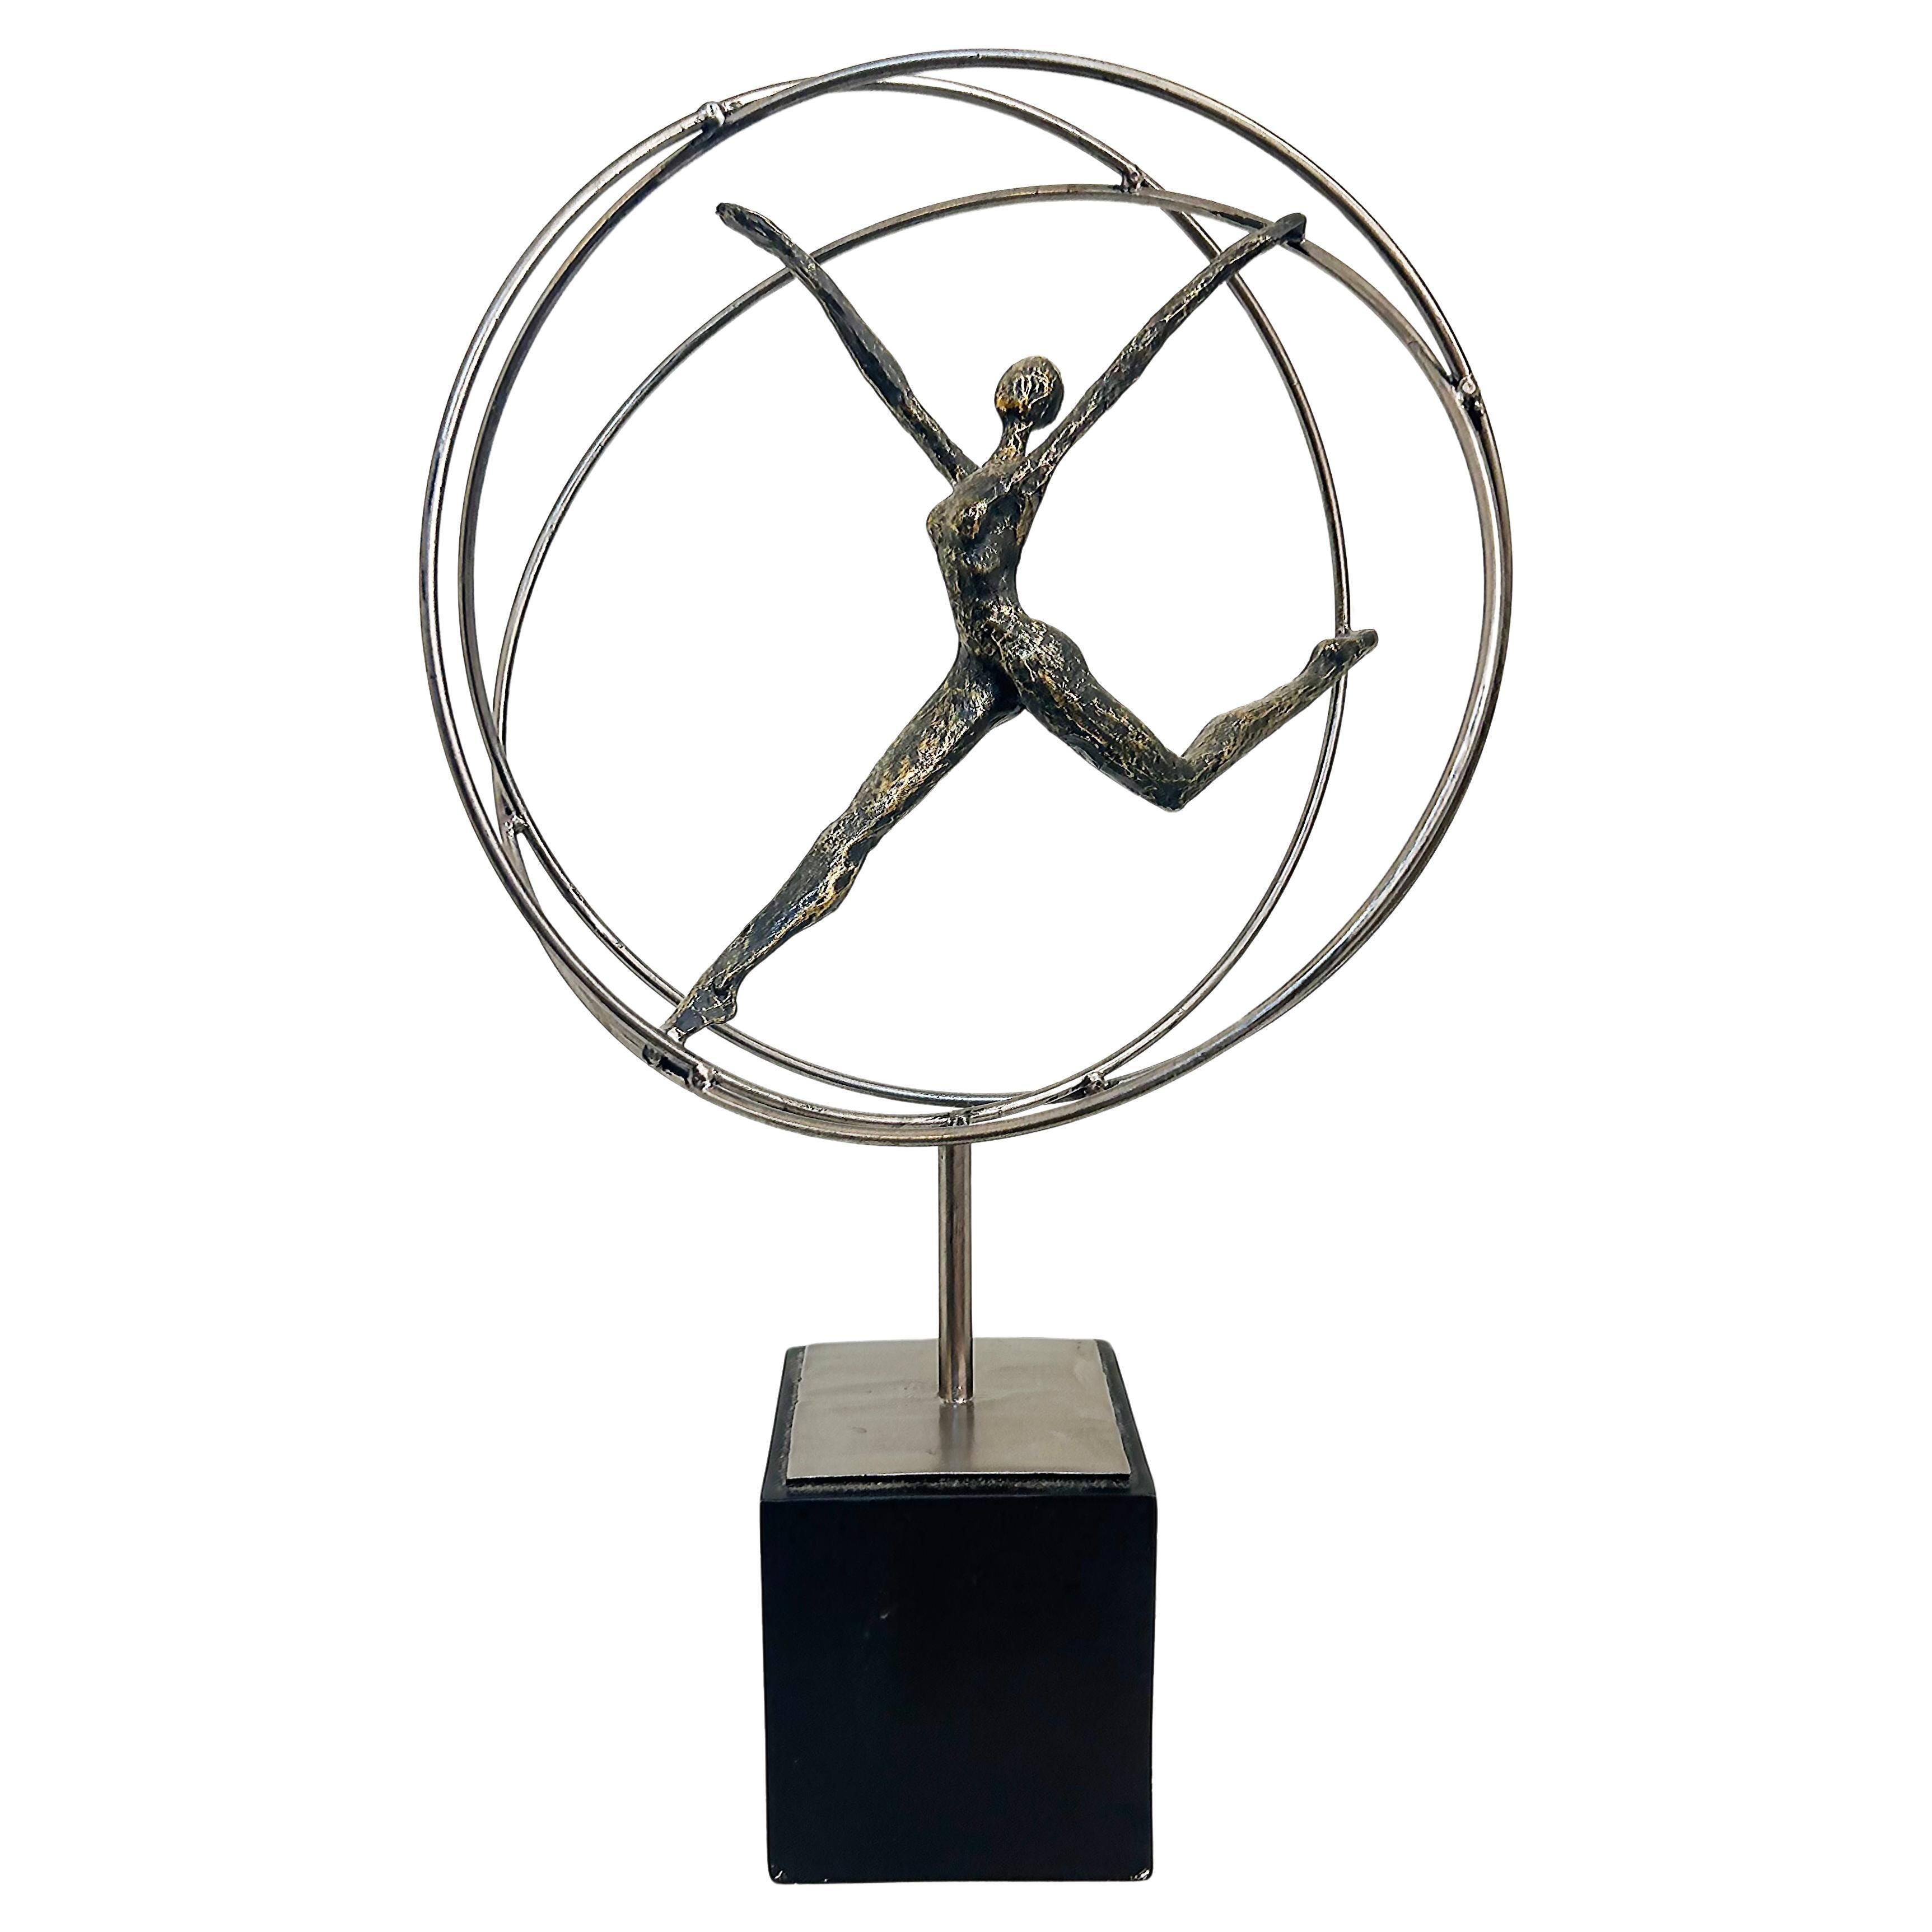 Sculpture figurative moderne d'acrobats sur anneaux monté sur une base carrée